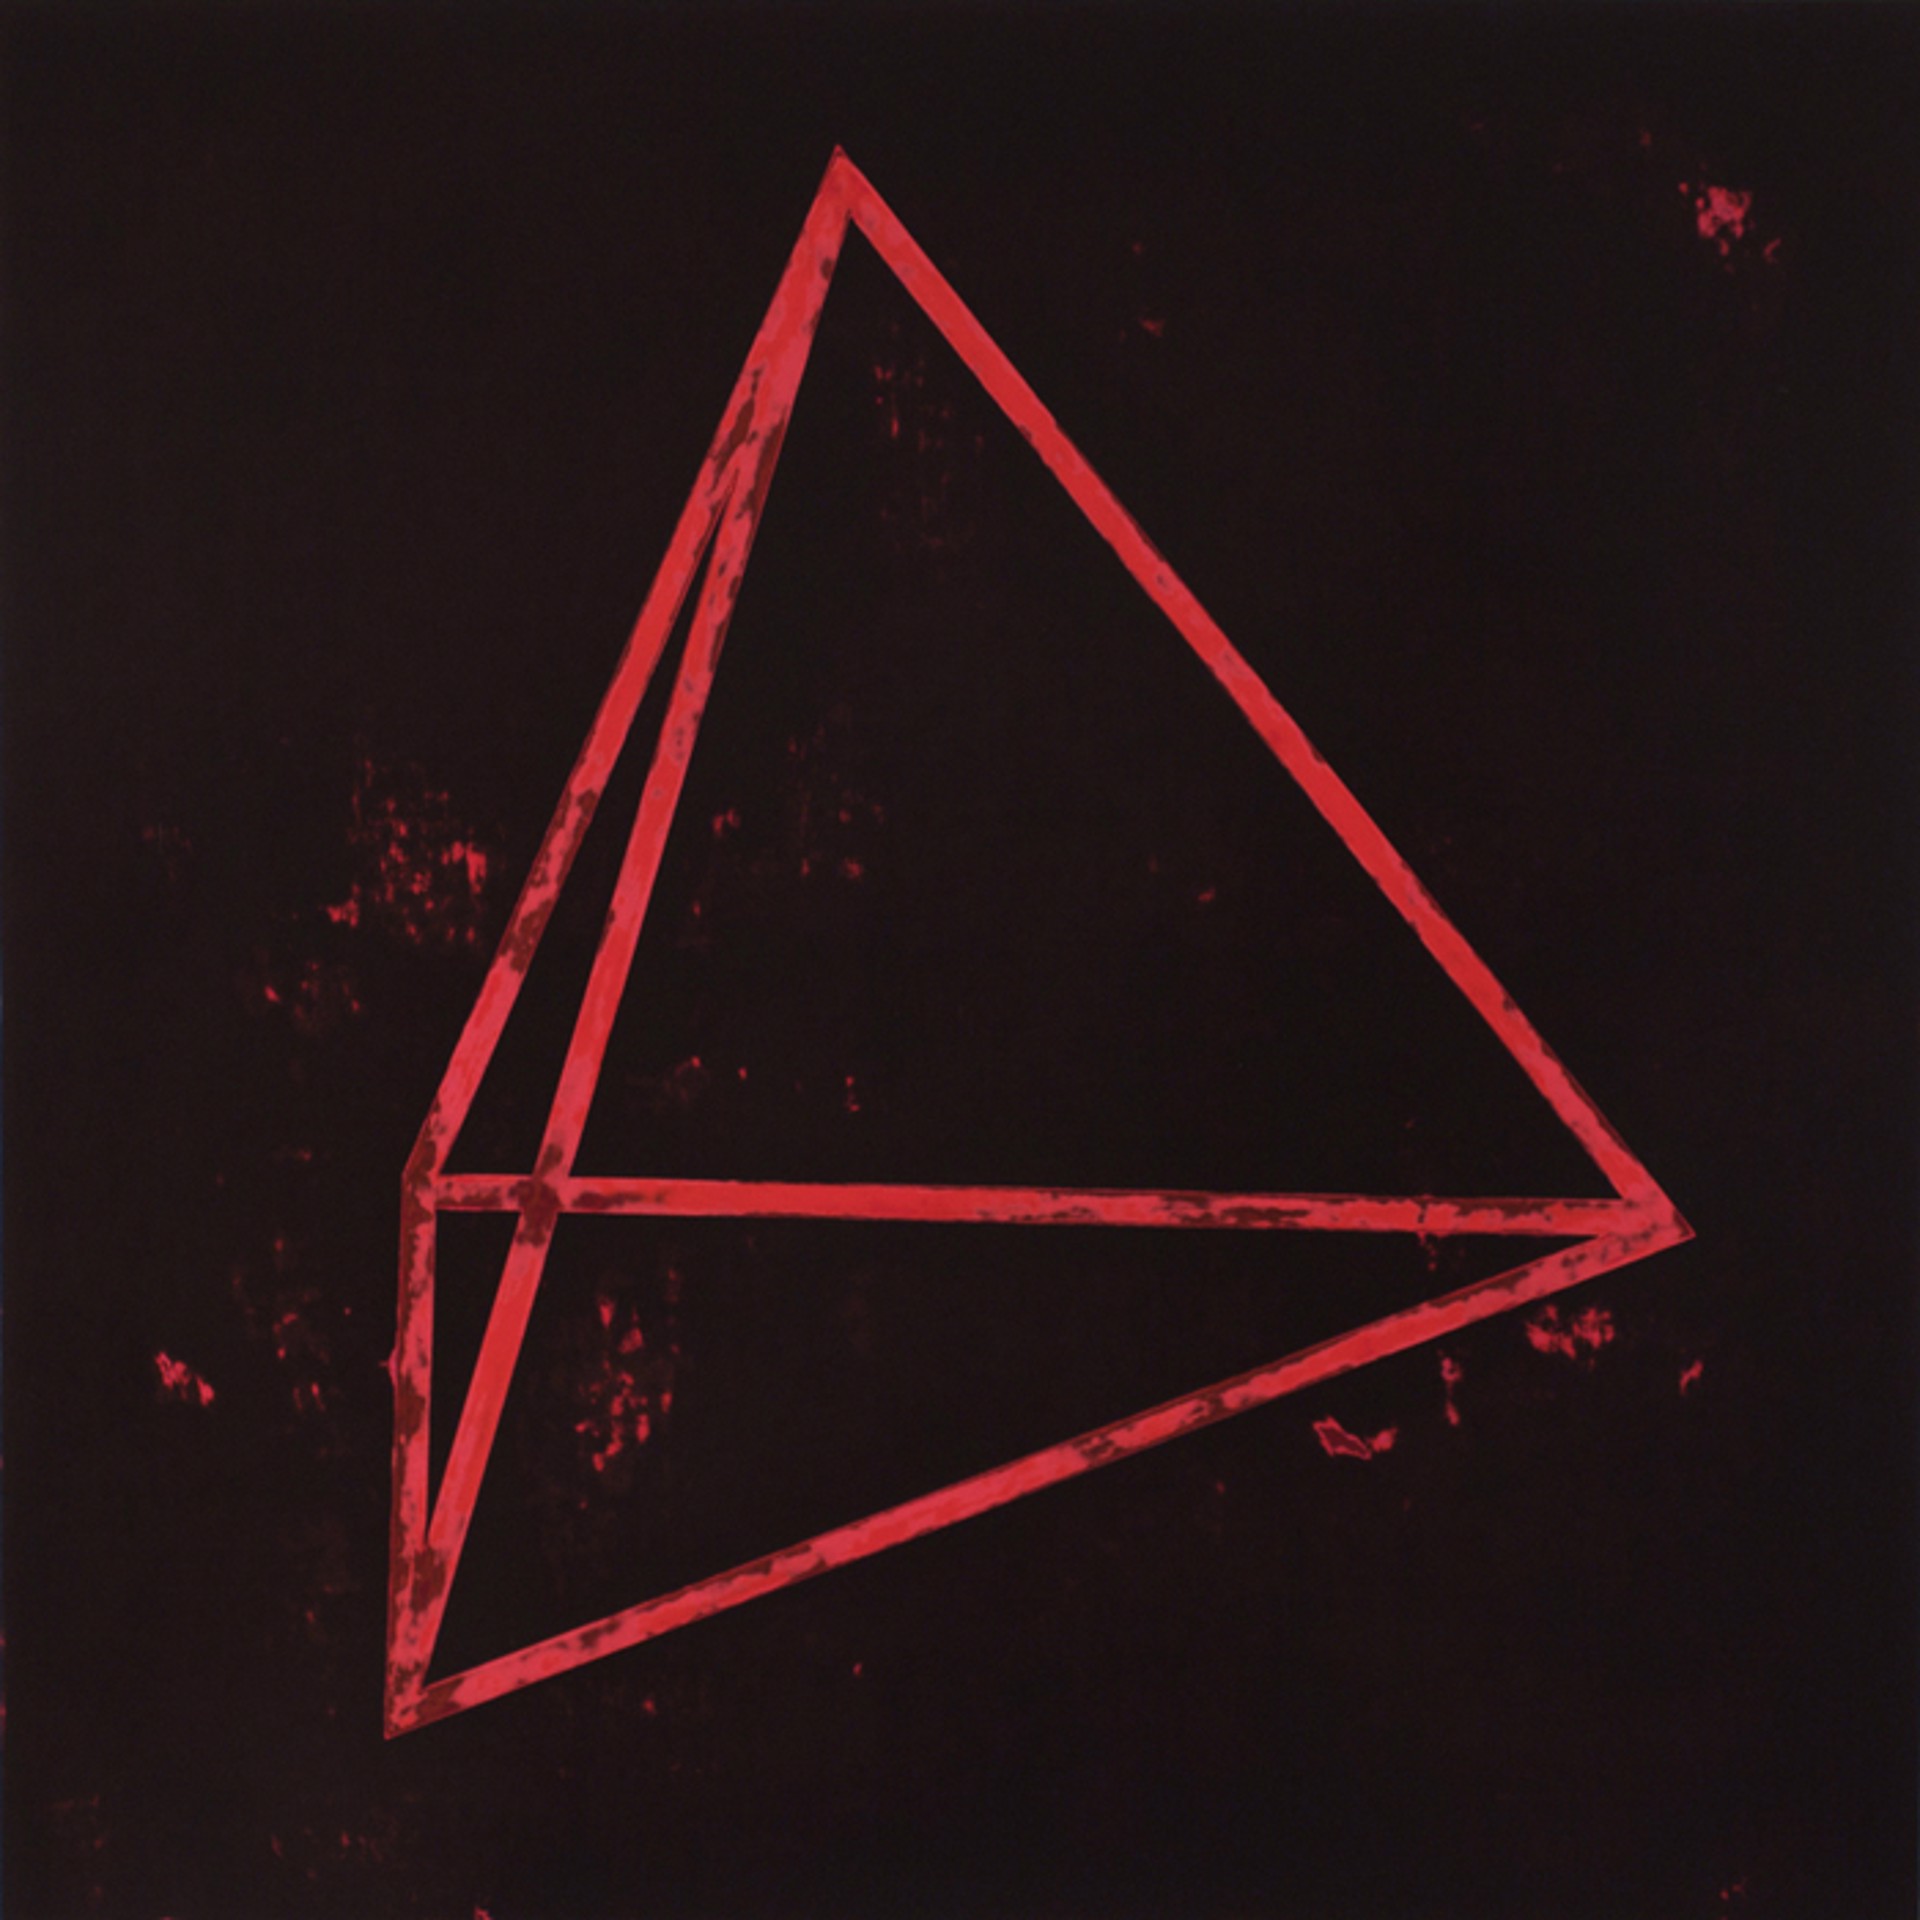 Tetrahedron by Garland Fielder